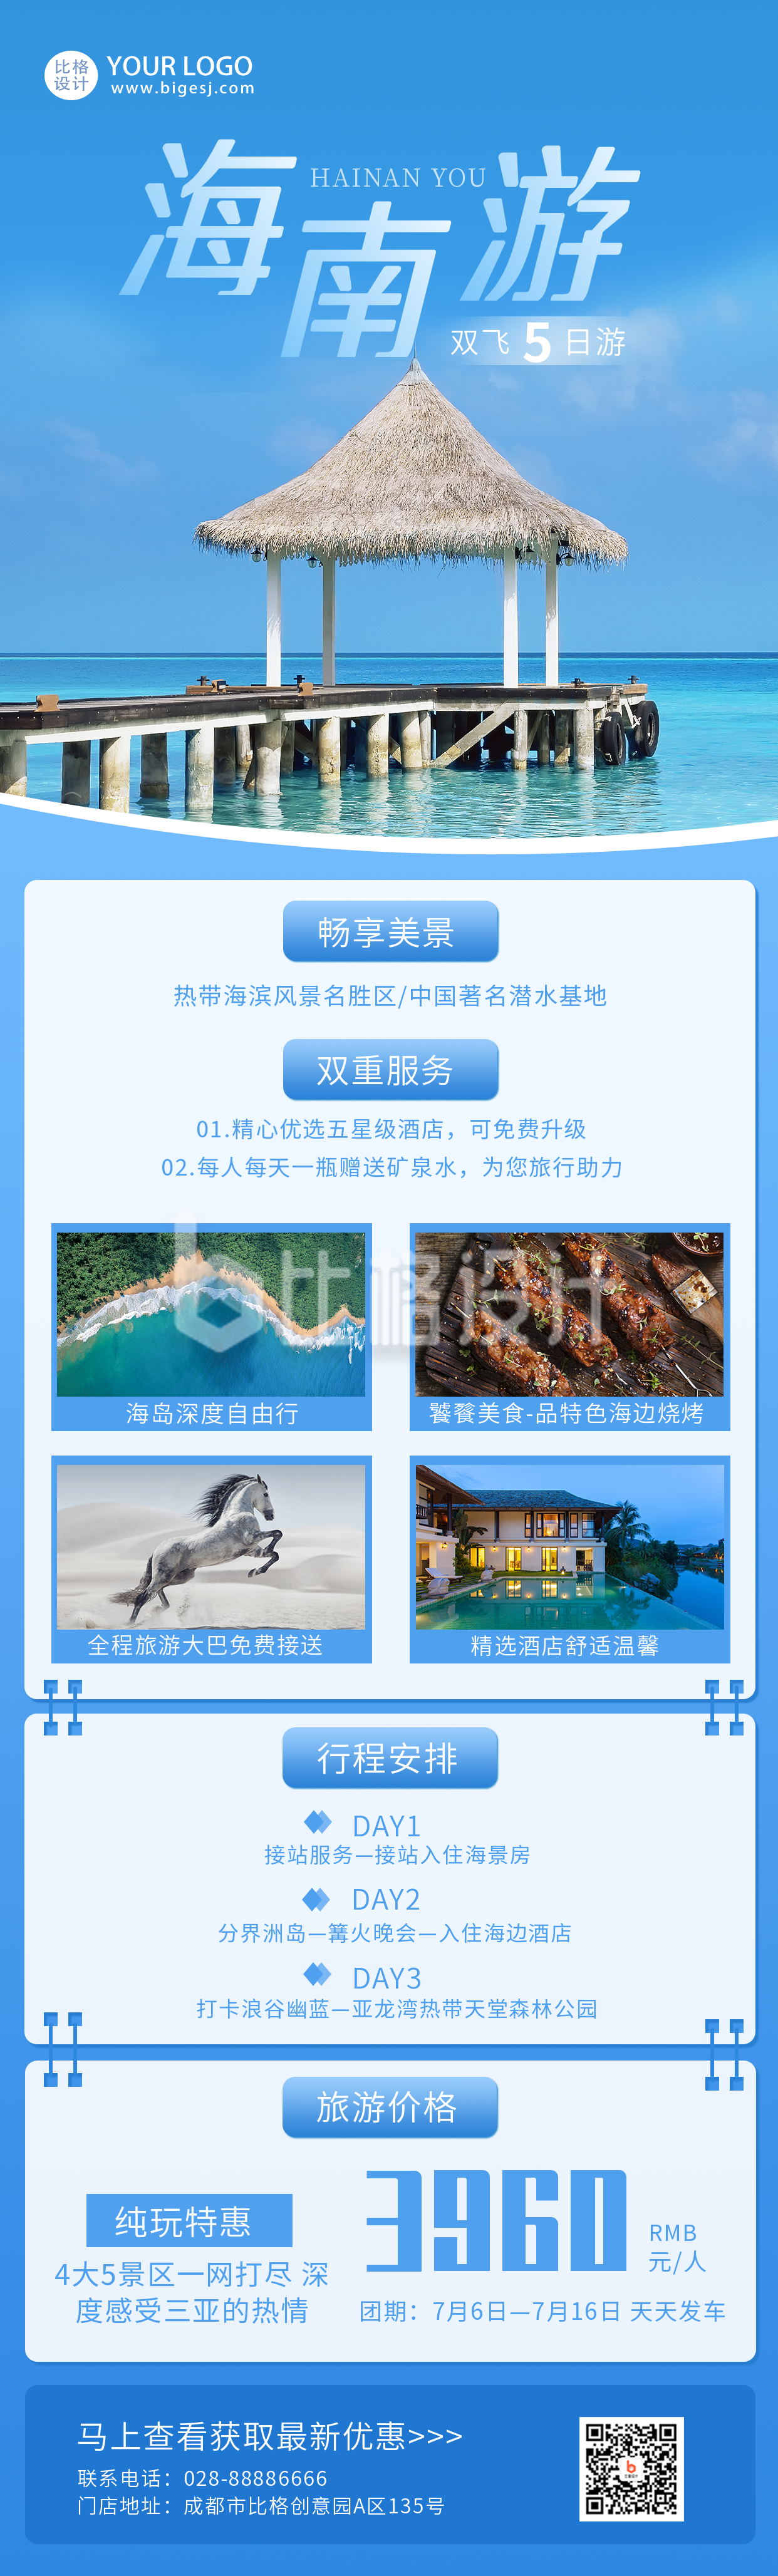 蓝色海南旅游宣传促销长图海报